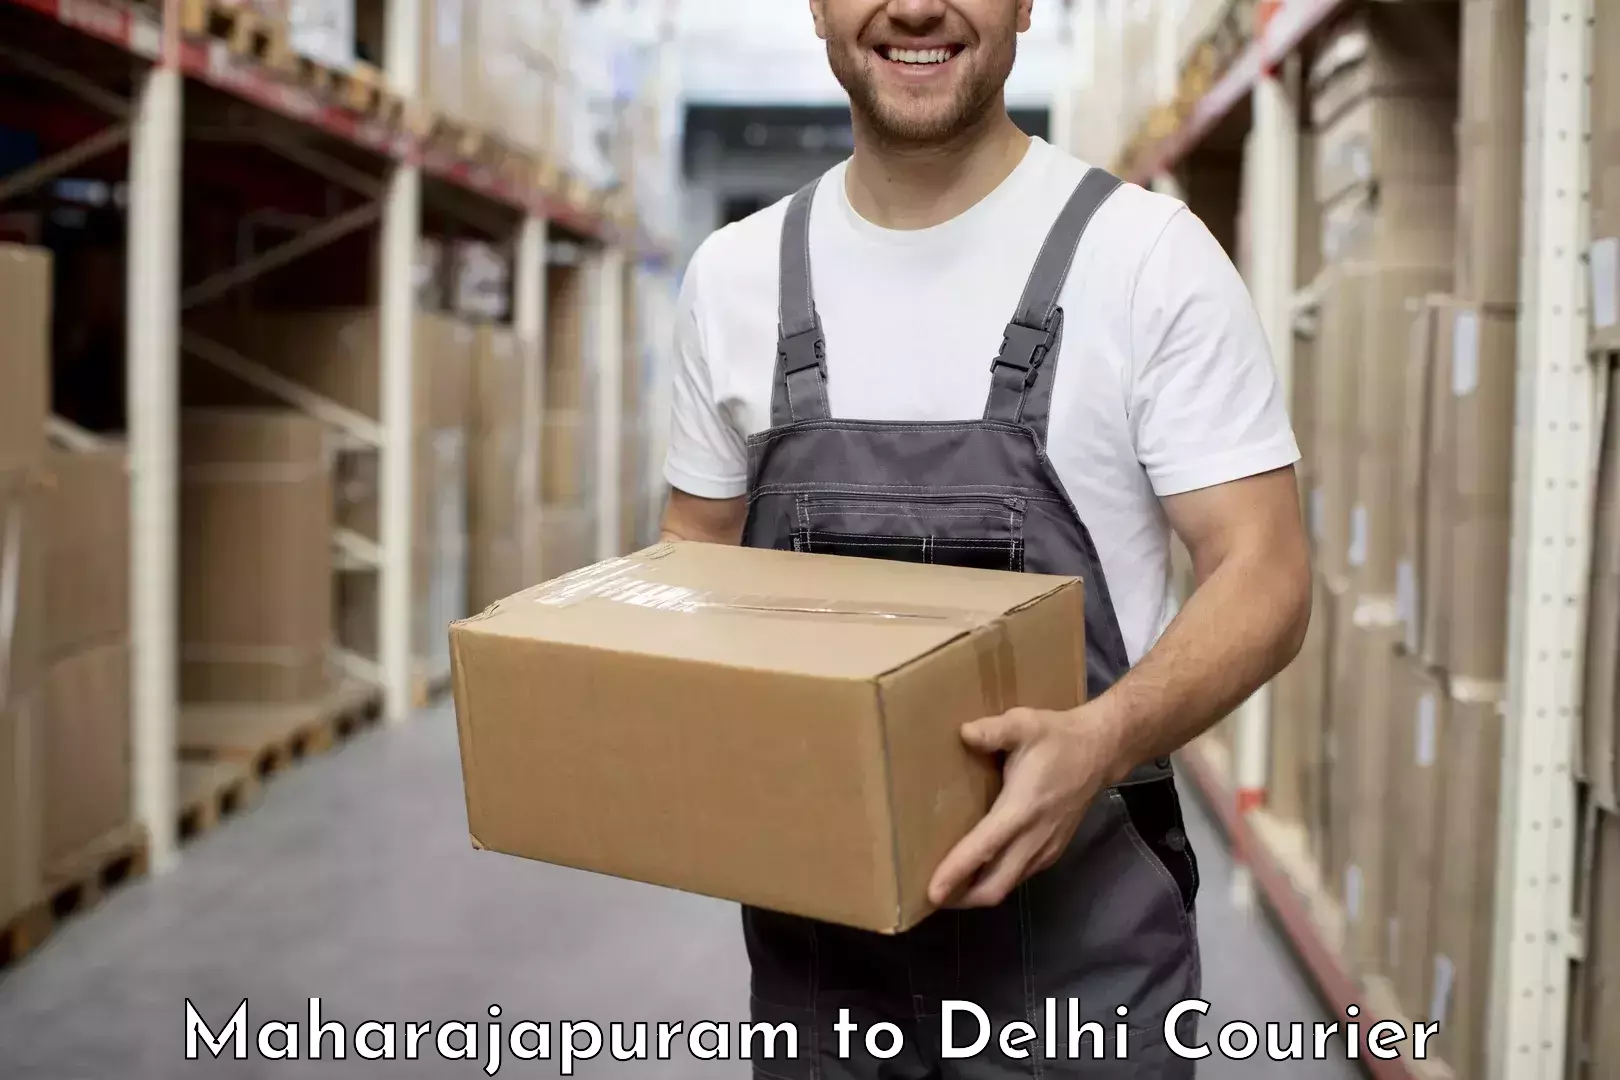 Personalized courier experiences Maharajapuram to Ramesh Nagar